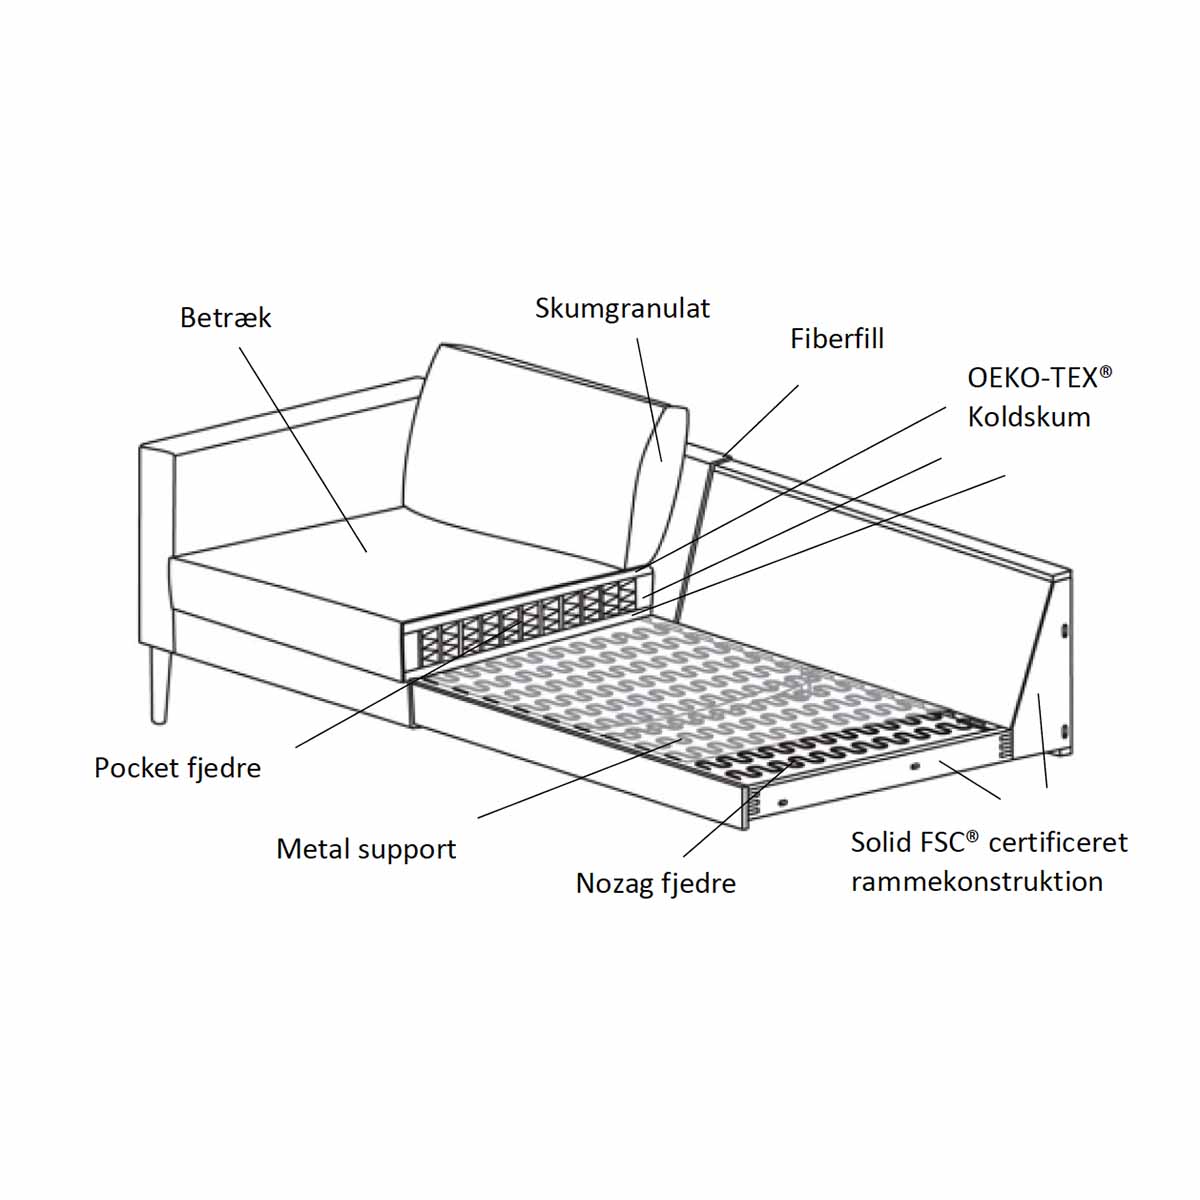 Nabbe Chaiselong Sofa - Vælg Farve og Opstilling